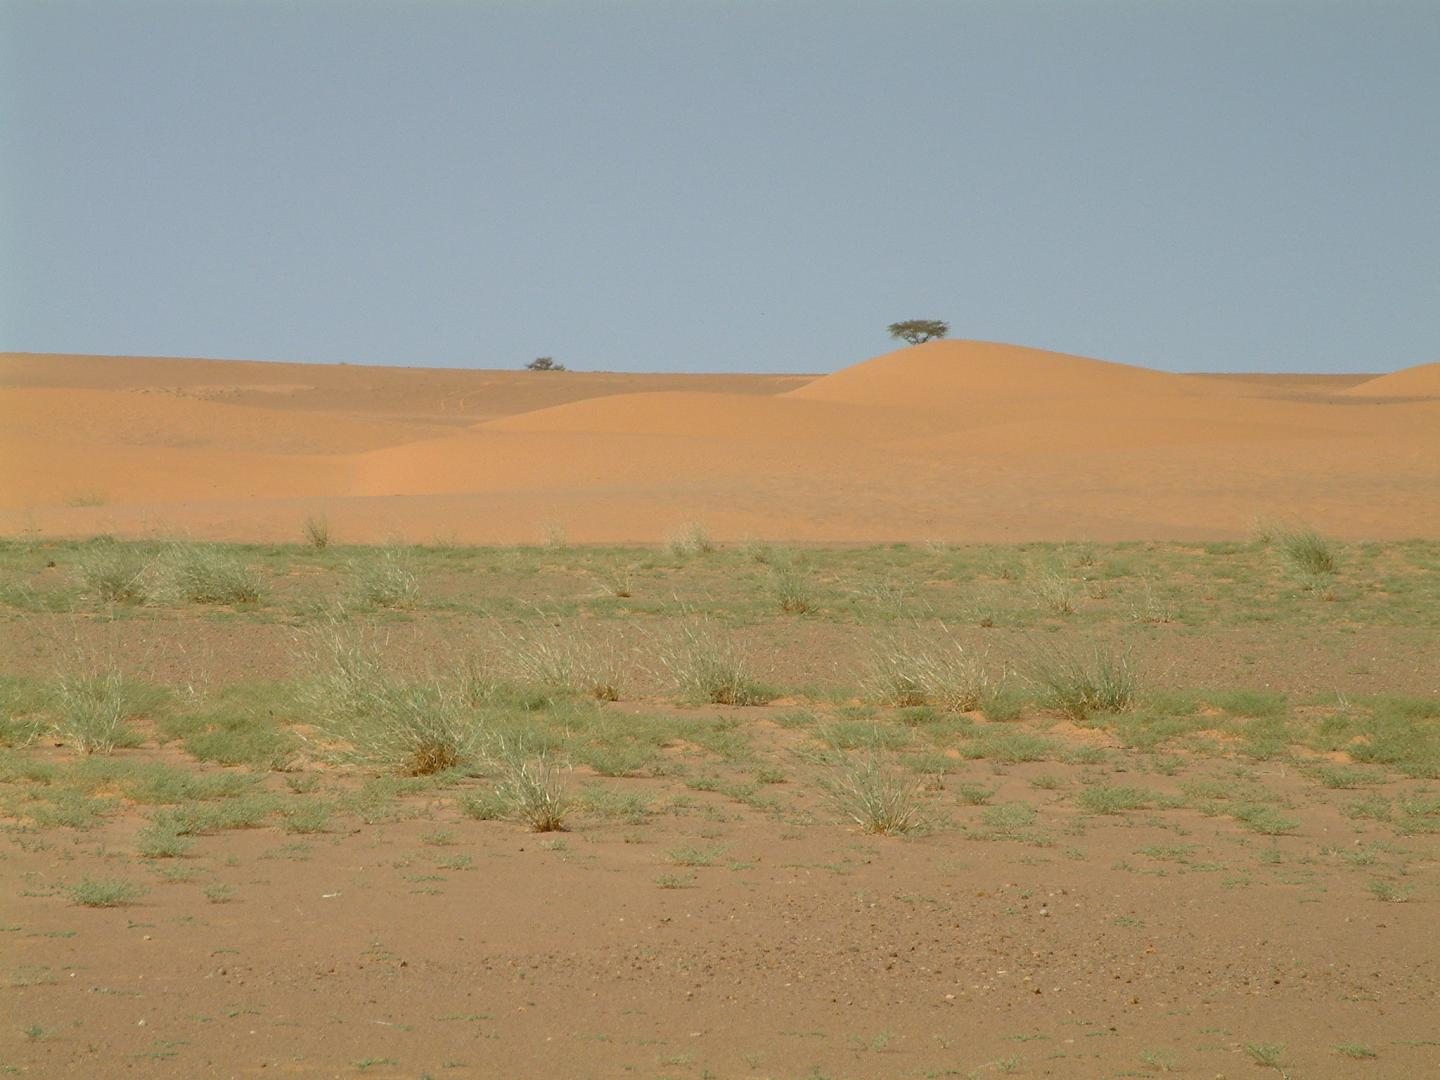 The Mauritanian Sahara after a rainy day.